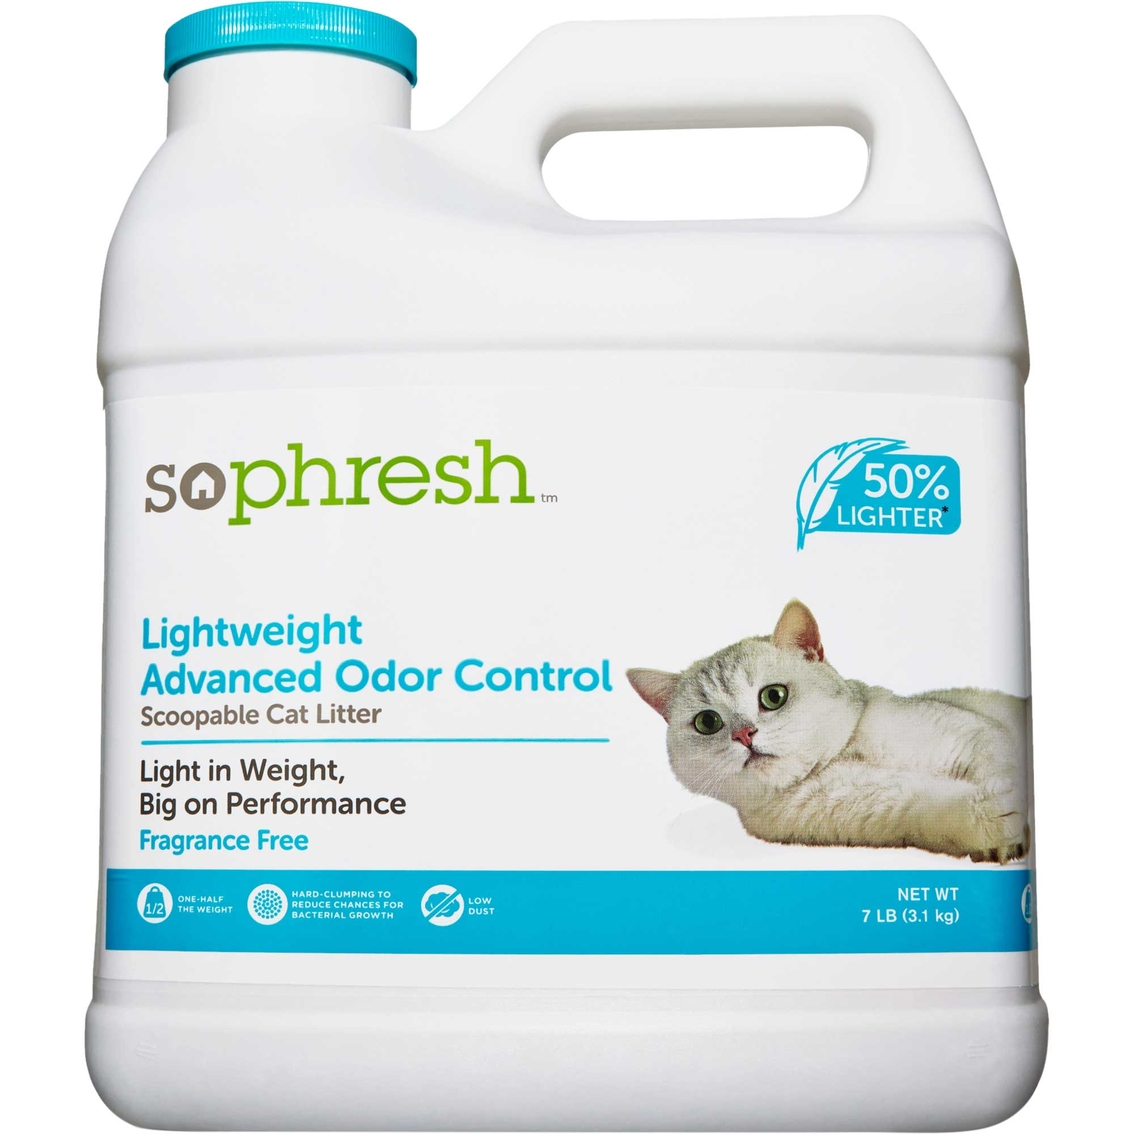 So Phresh Lightweight Odor Control Cat Litter, 7 Lbs. Litter & Waste